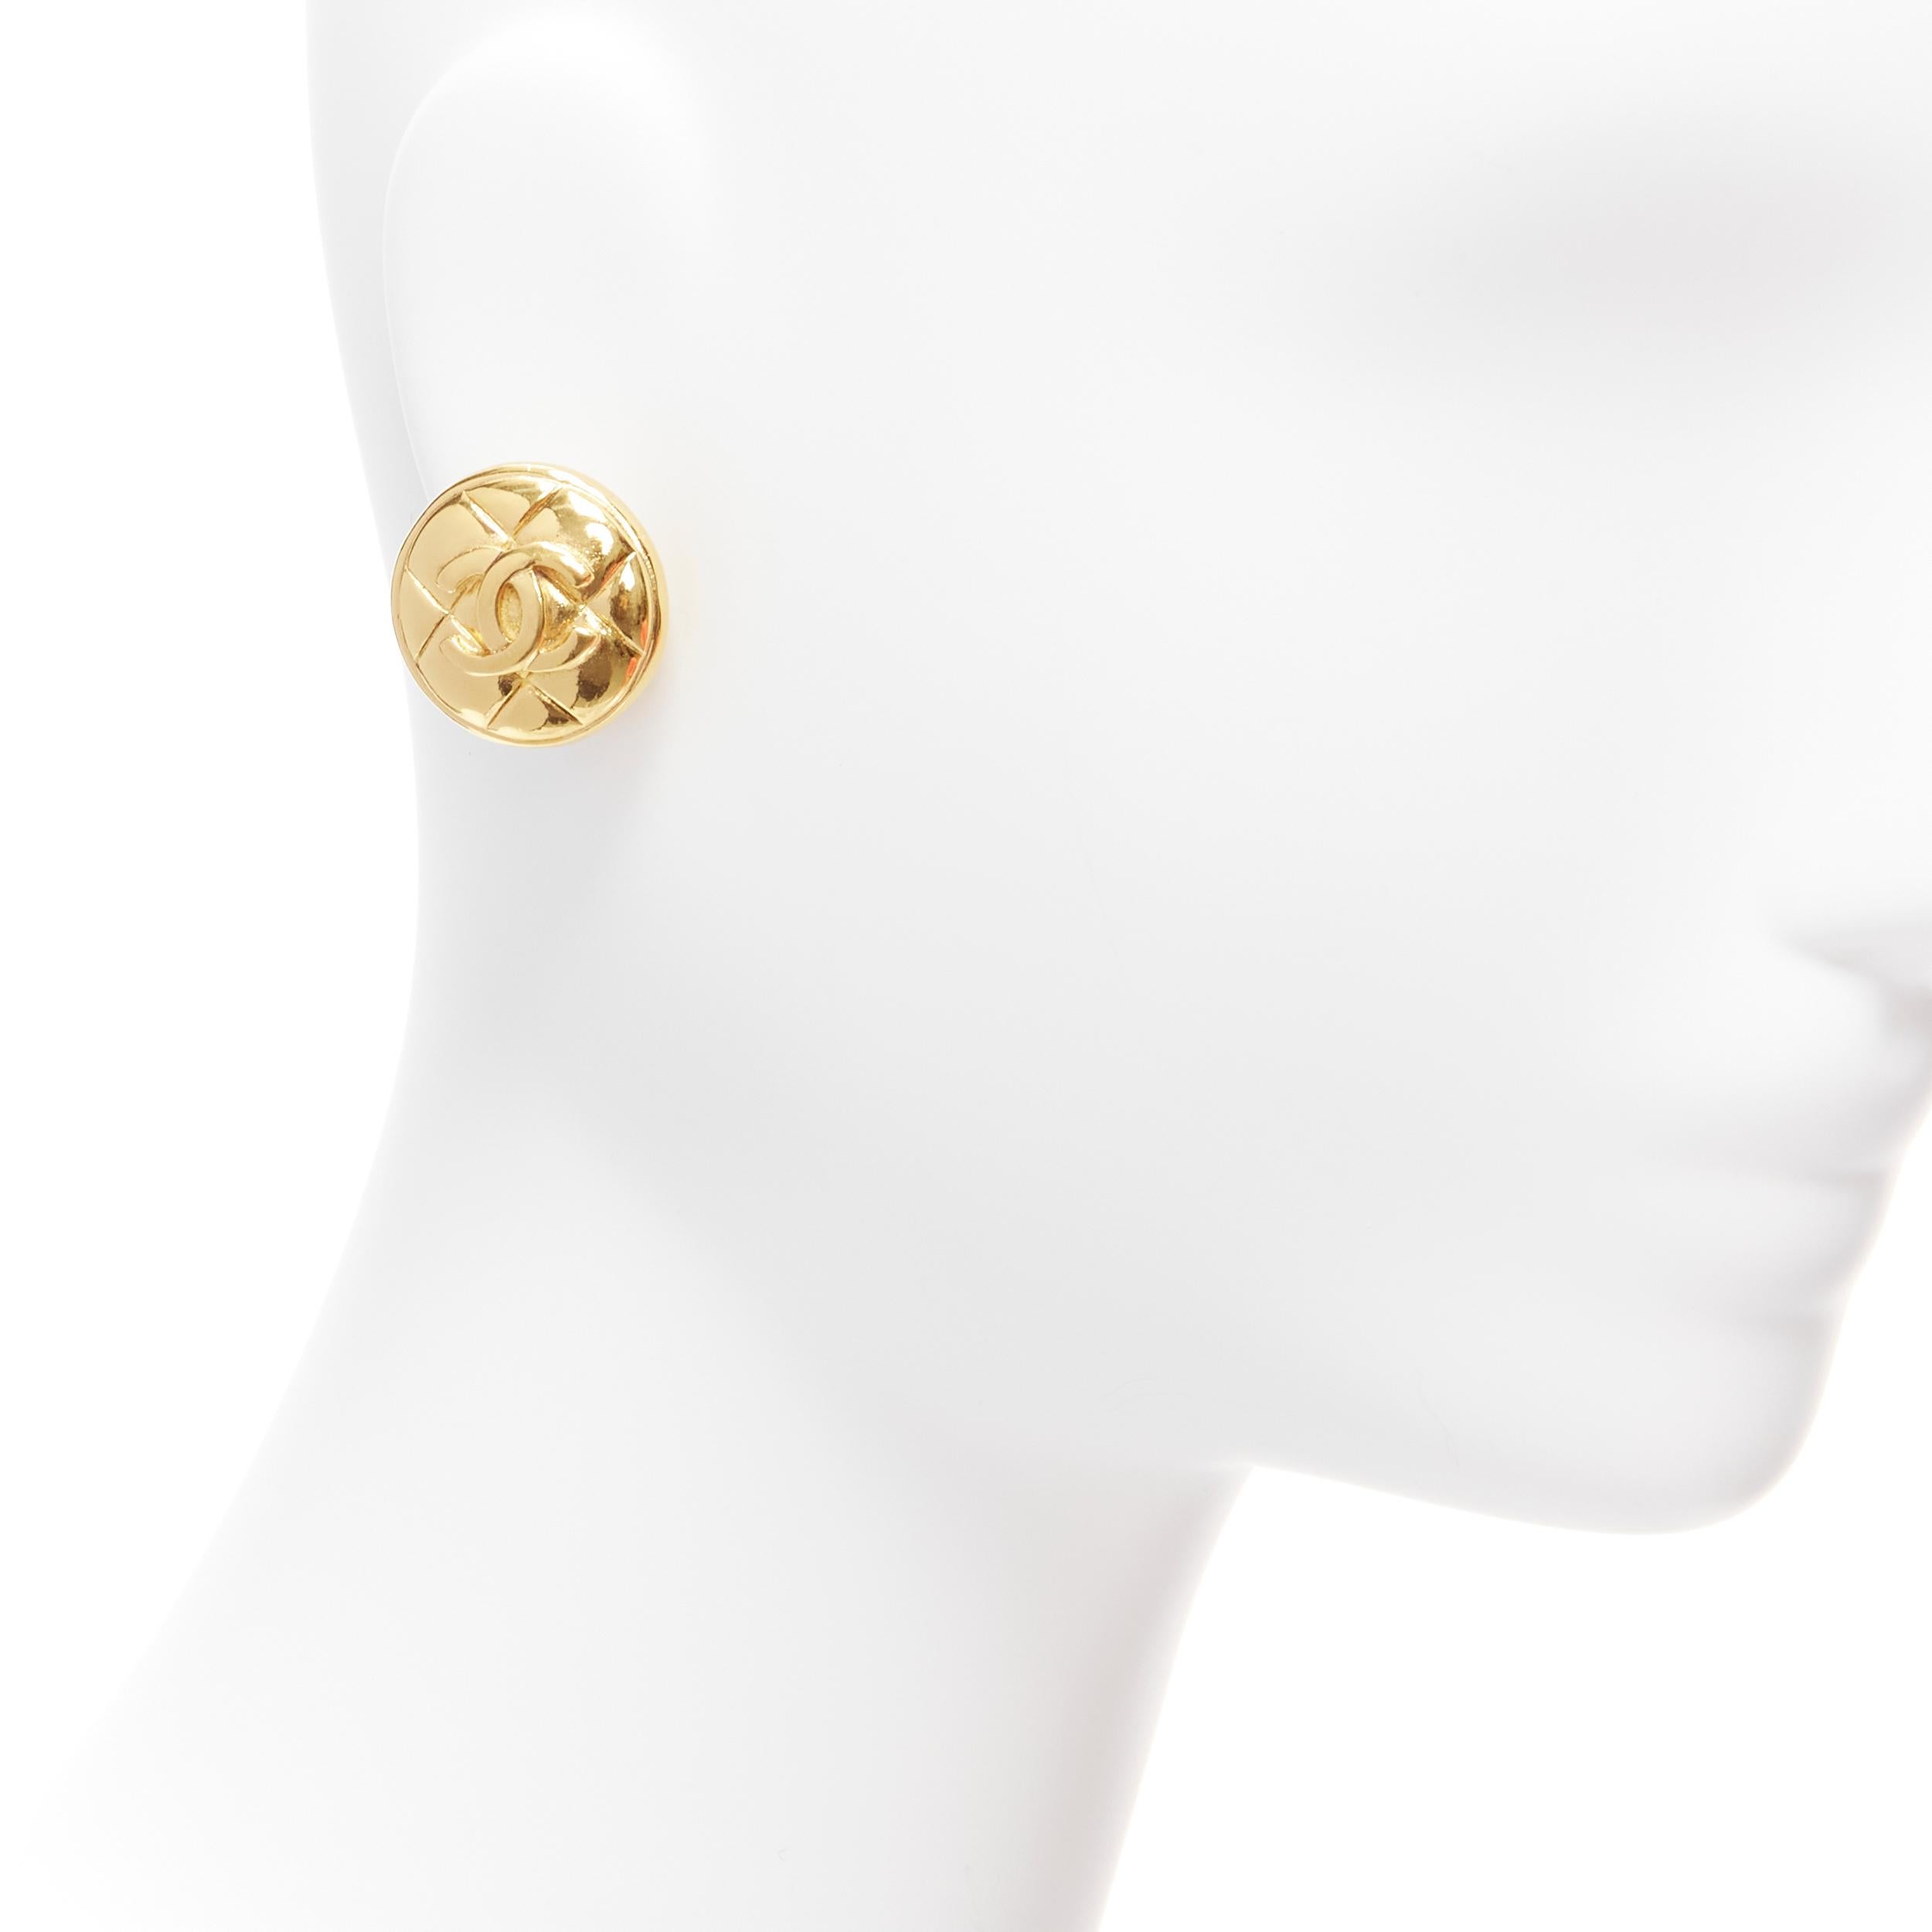 CHANEL Goldfarbener Diamant-Clip-Ohrring mit gestepptem CC-Logo und Münzklammer
Referenz: TGAS/D00160
Marke: Chanel
Designer: Karl Lagerfeld
MATERIAL: Metall
Farbe: Gold
Muster: Solide
Verschluss: Clip On
Hergestellt in: